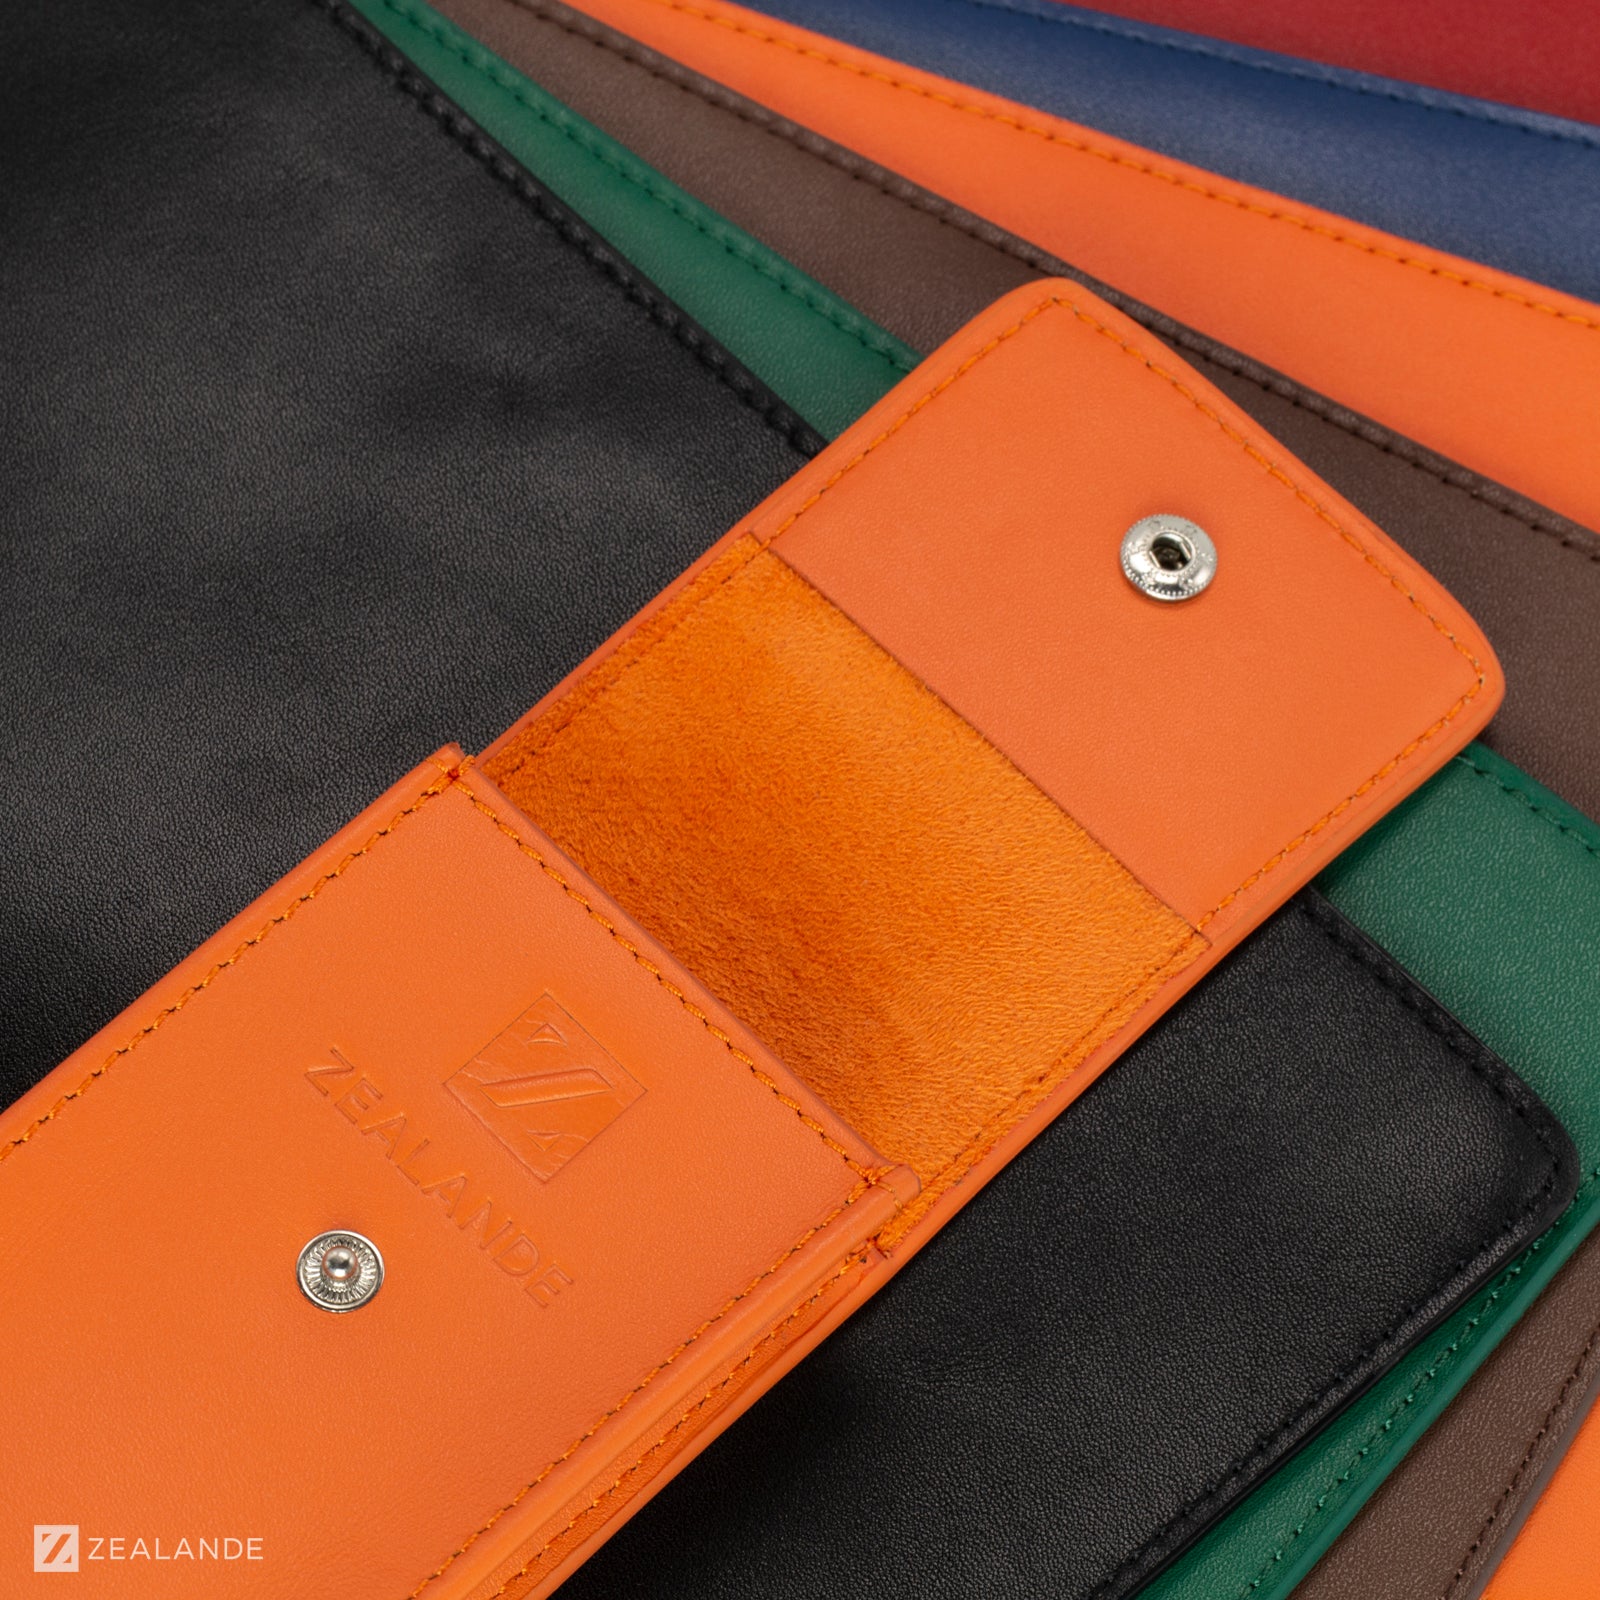 Open zealande orange leather watch pouch